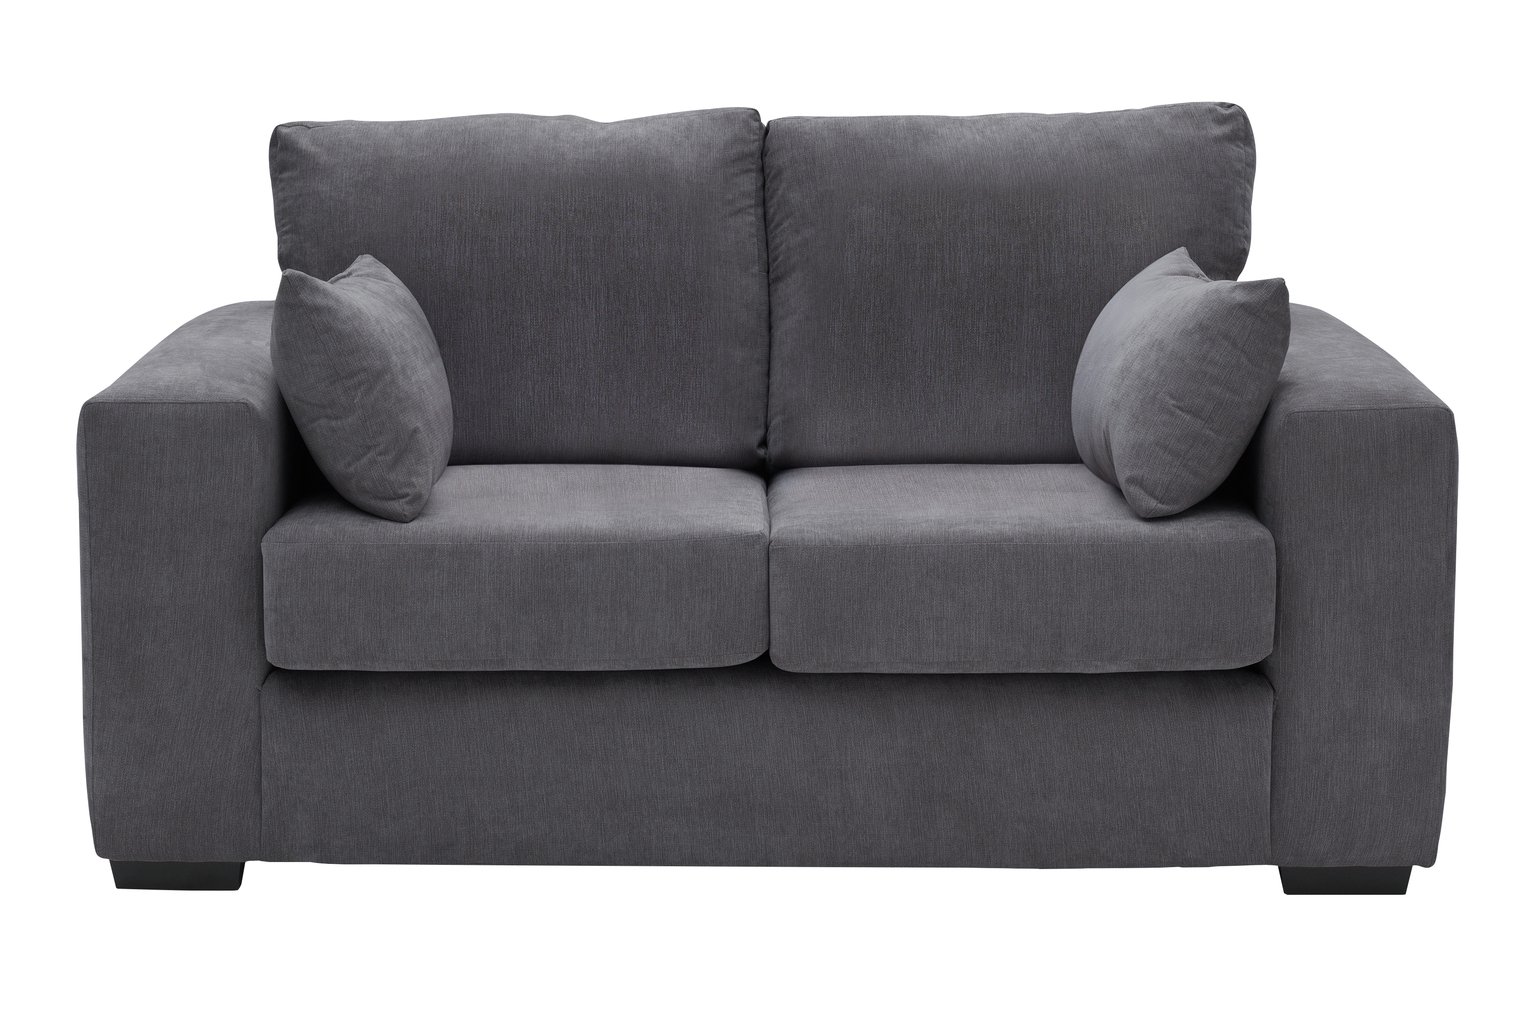 Argos Home Eton 2 Seater Fabric Sofa - Charcoal